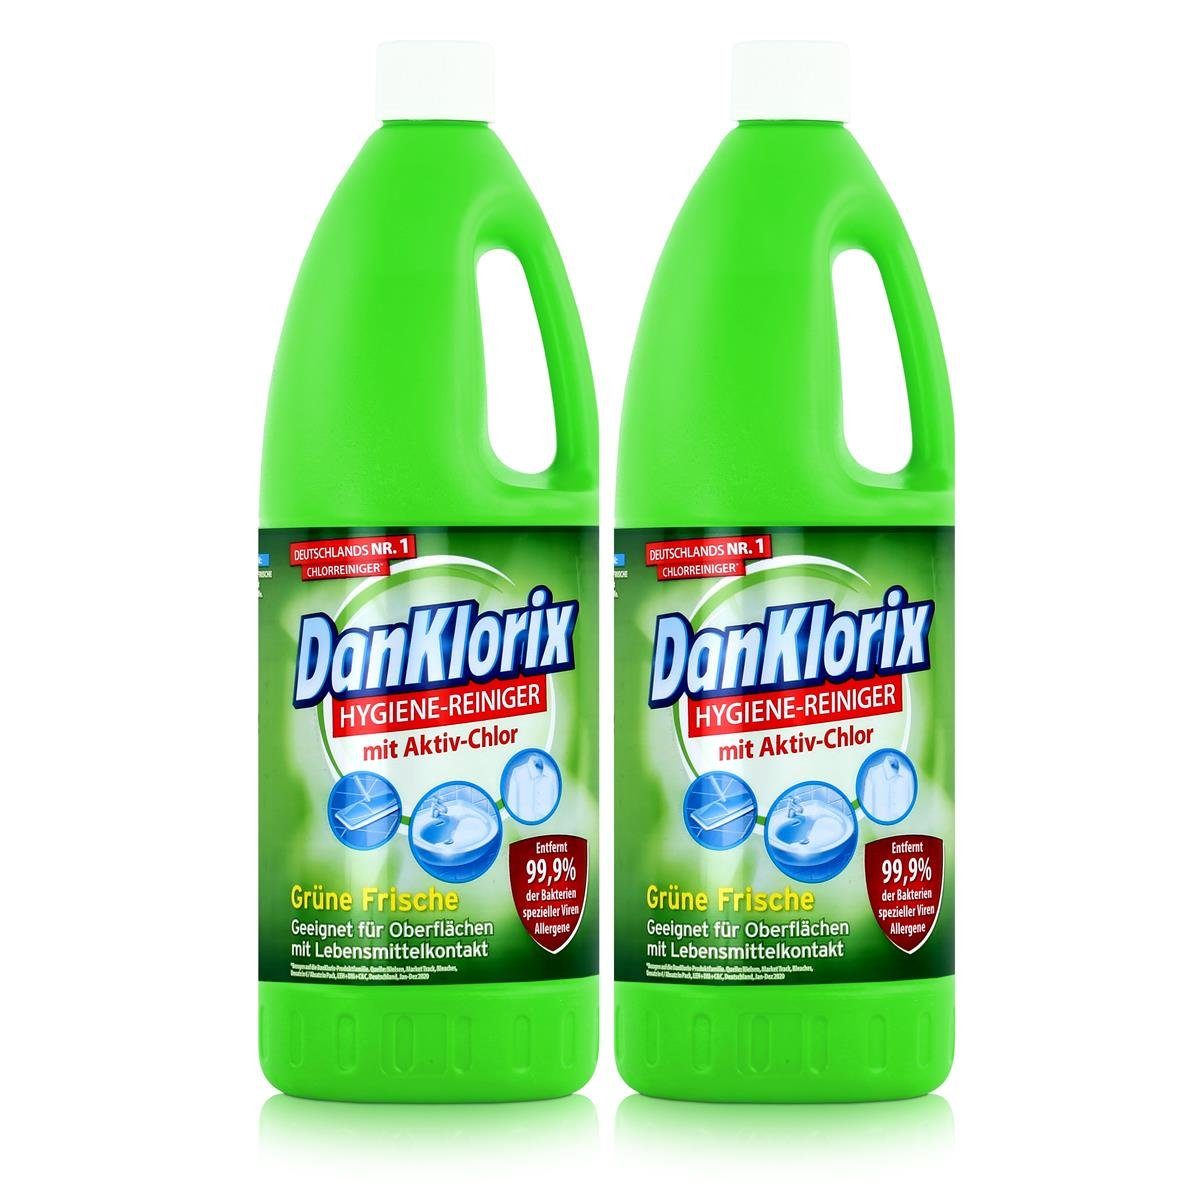 DanKlorix DanKlorix Hygiene-Reiniger Grüne Frische 1,5L - Mit Aktiv-Chlor (2er P Allzweckreiniger